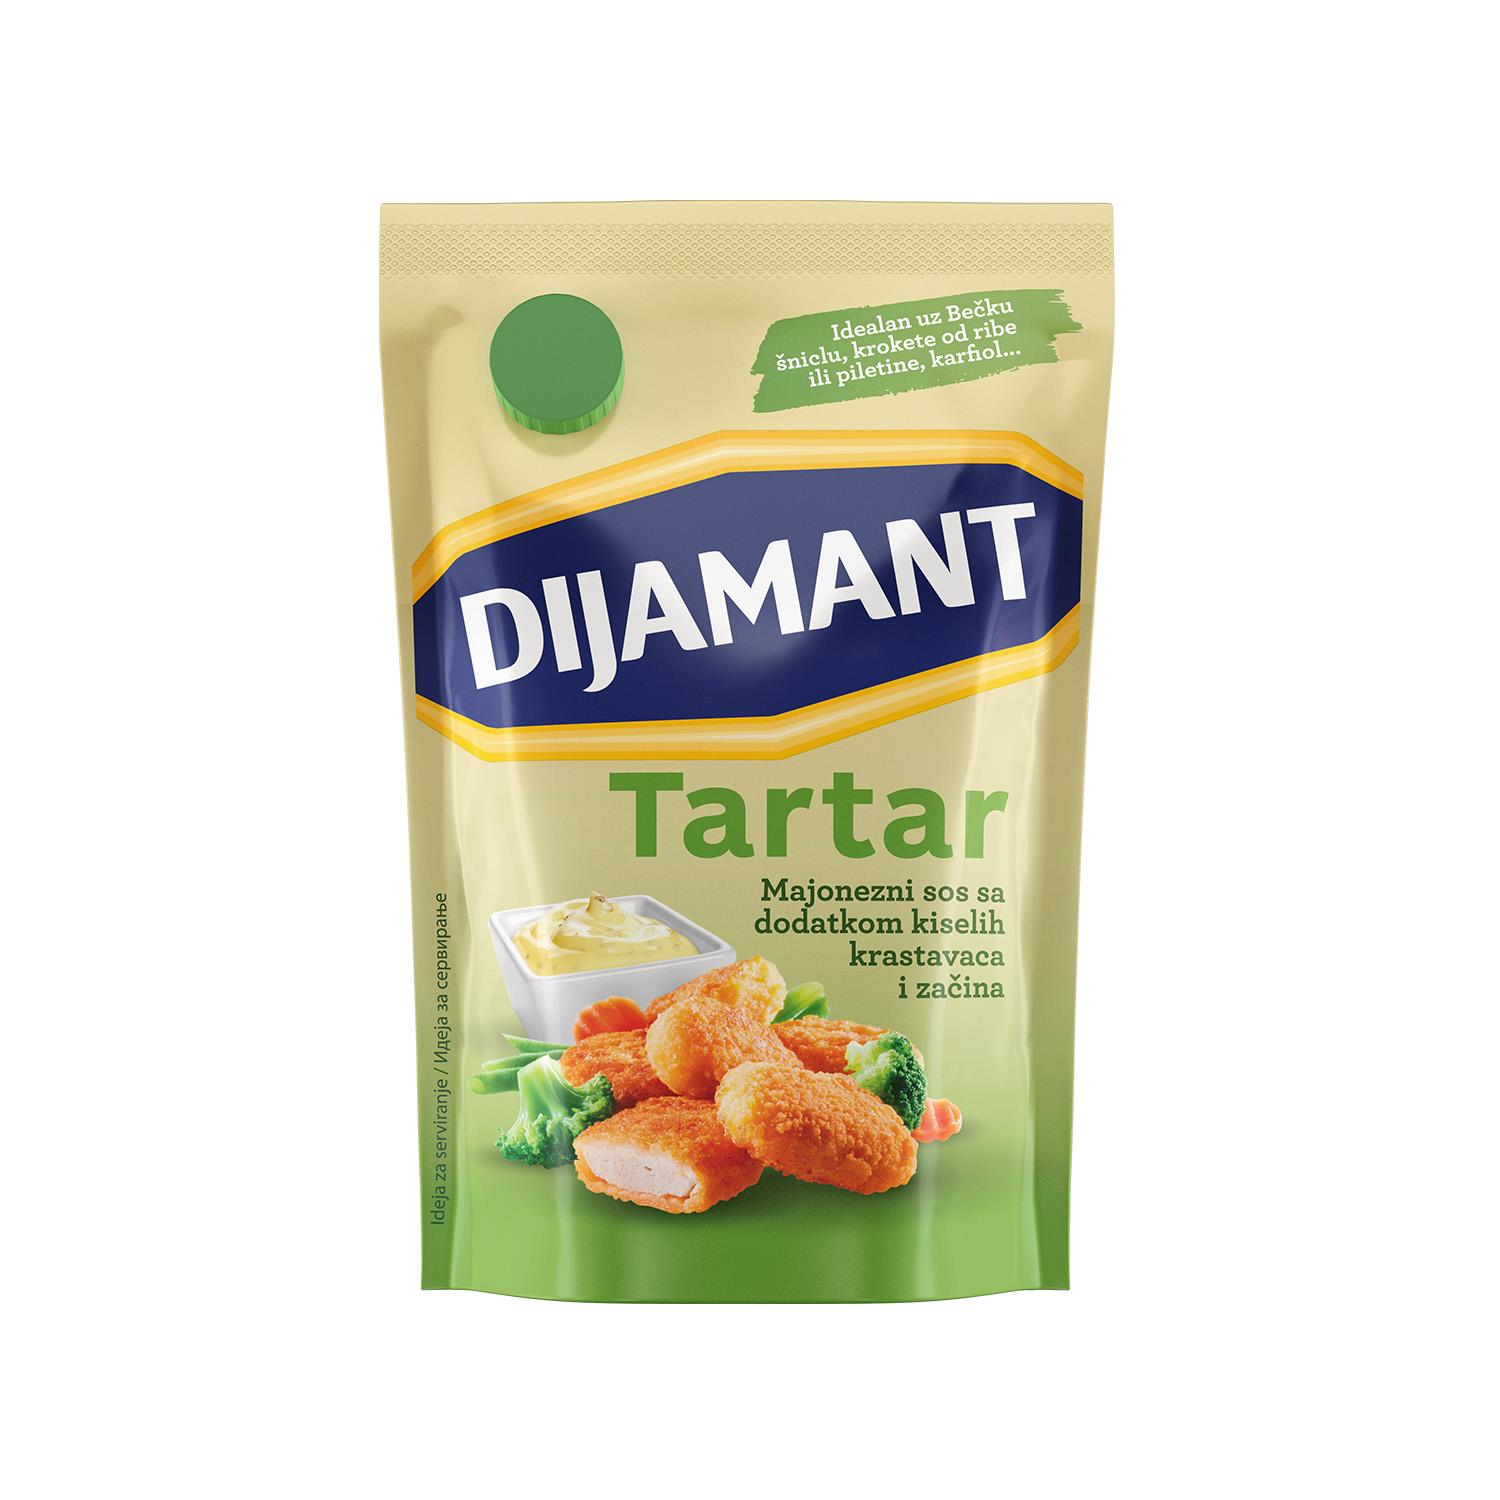 DIJAMANT Tartar sos 300g